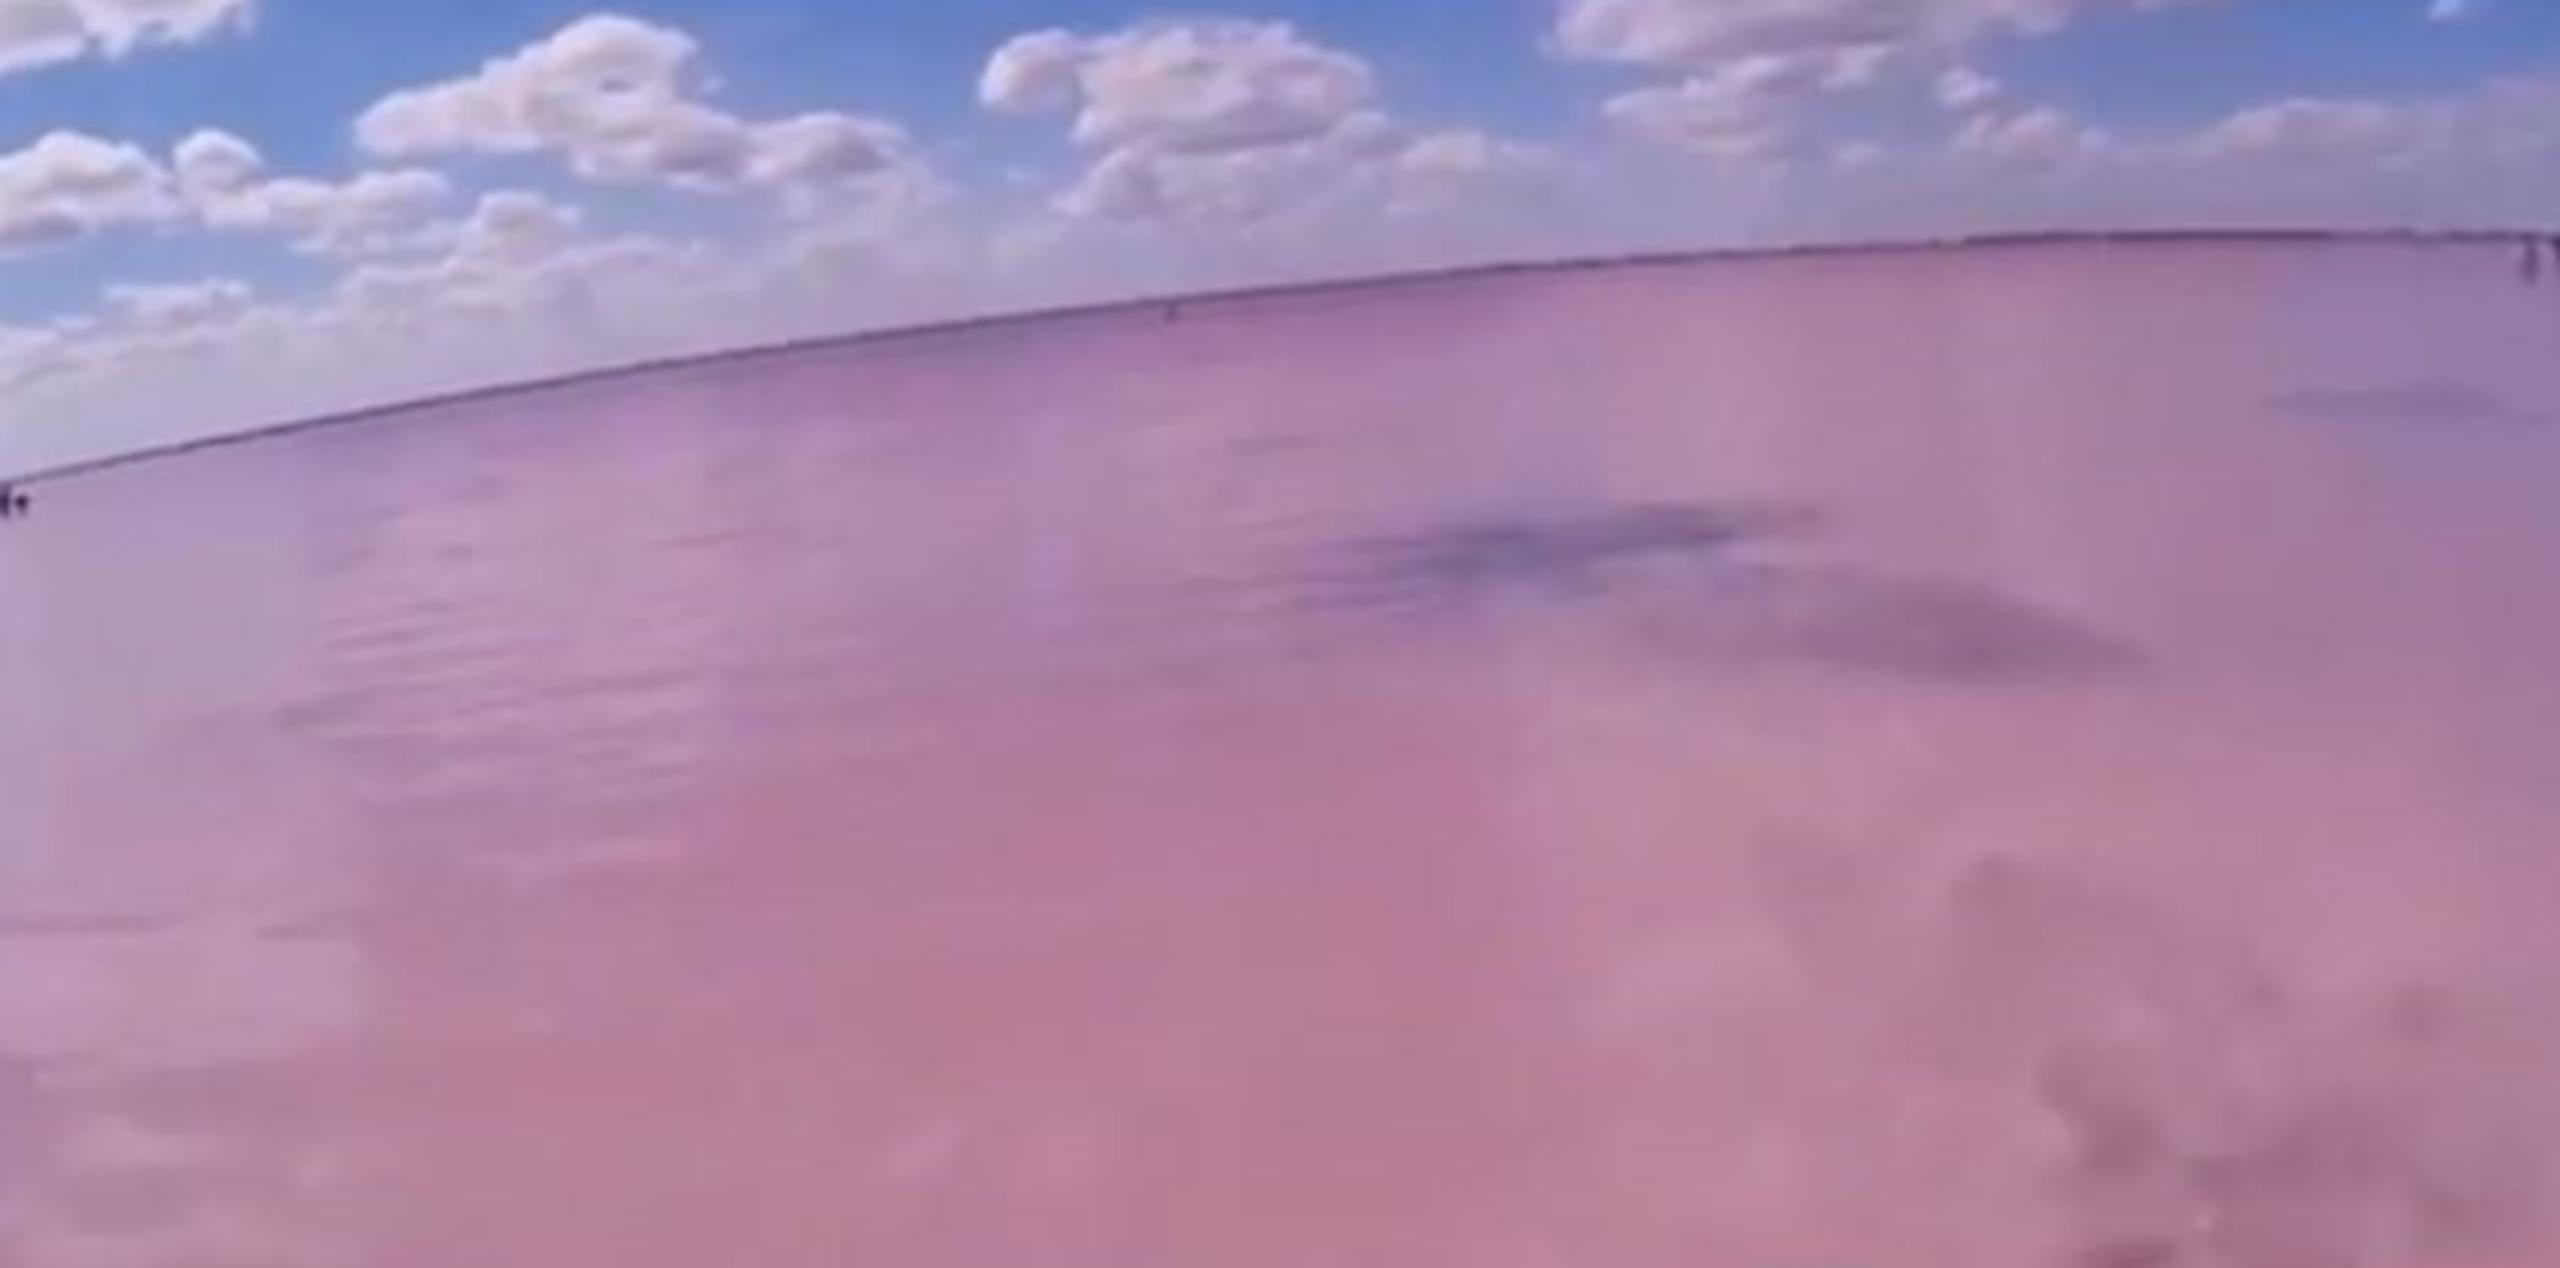 Antes y después de su fase rosada, las aguas del lago son azules cuando brilla el sol y grises en los días nublados. (Captura)